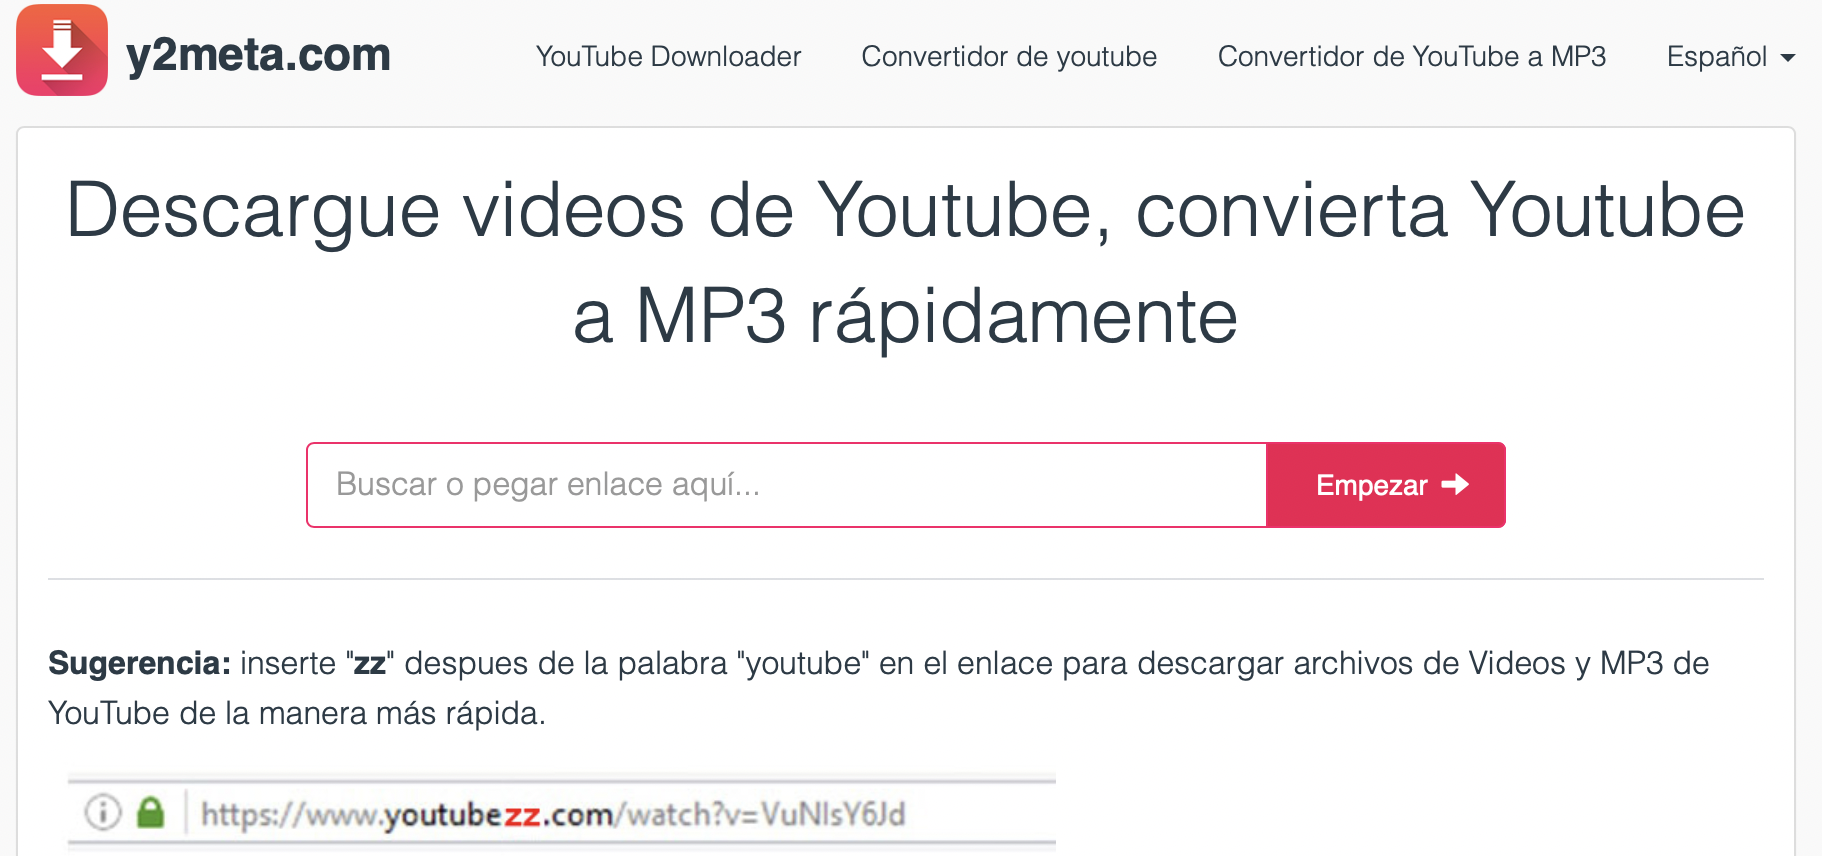 y2meta.com puede descargar su video en varios formatos, incluido MP3. (foto: y2meta.com)